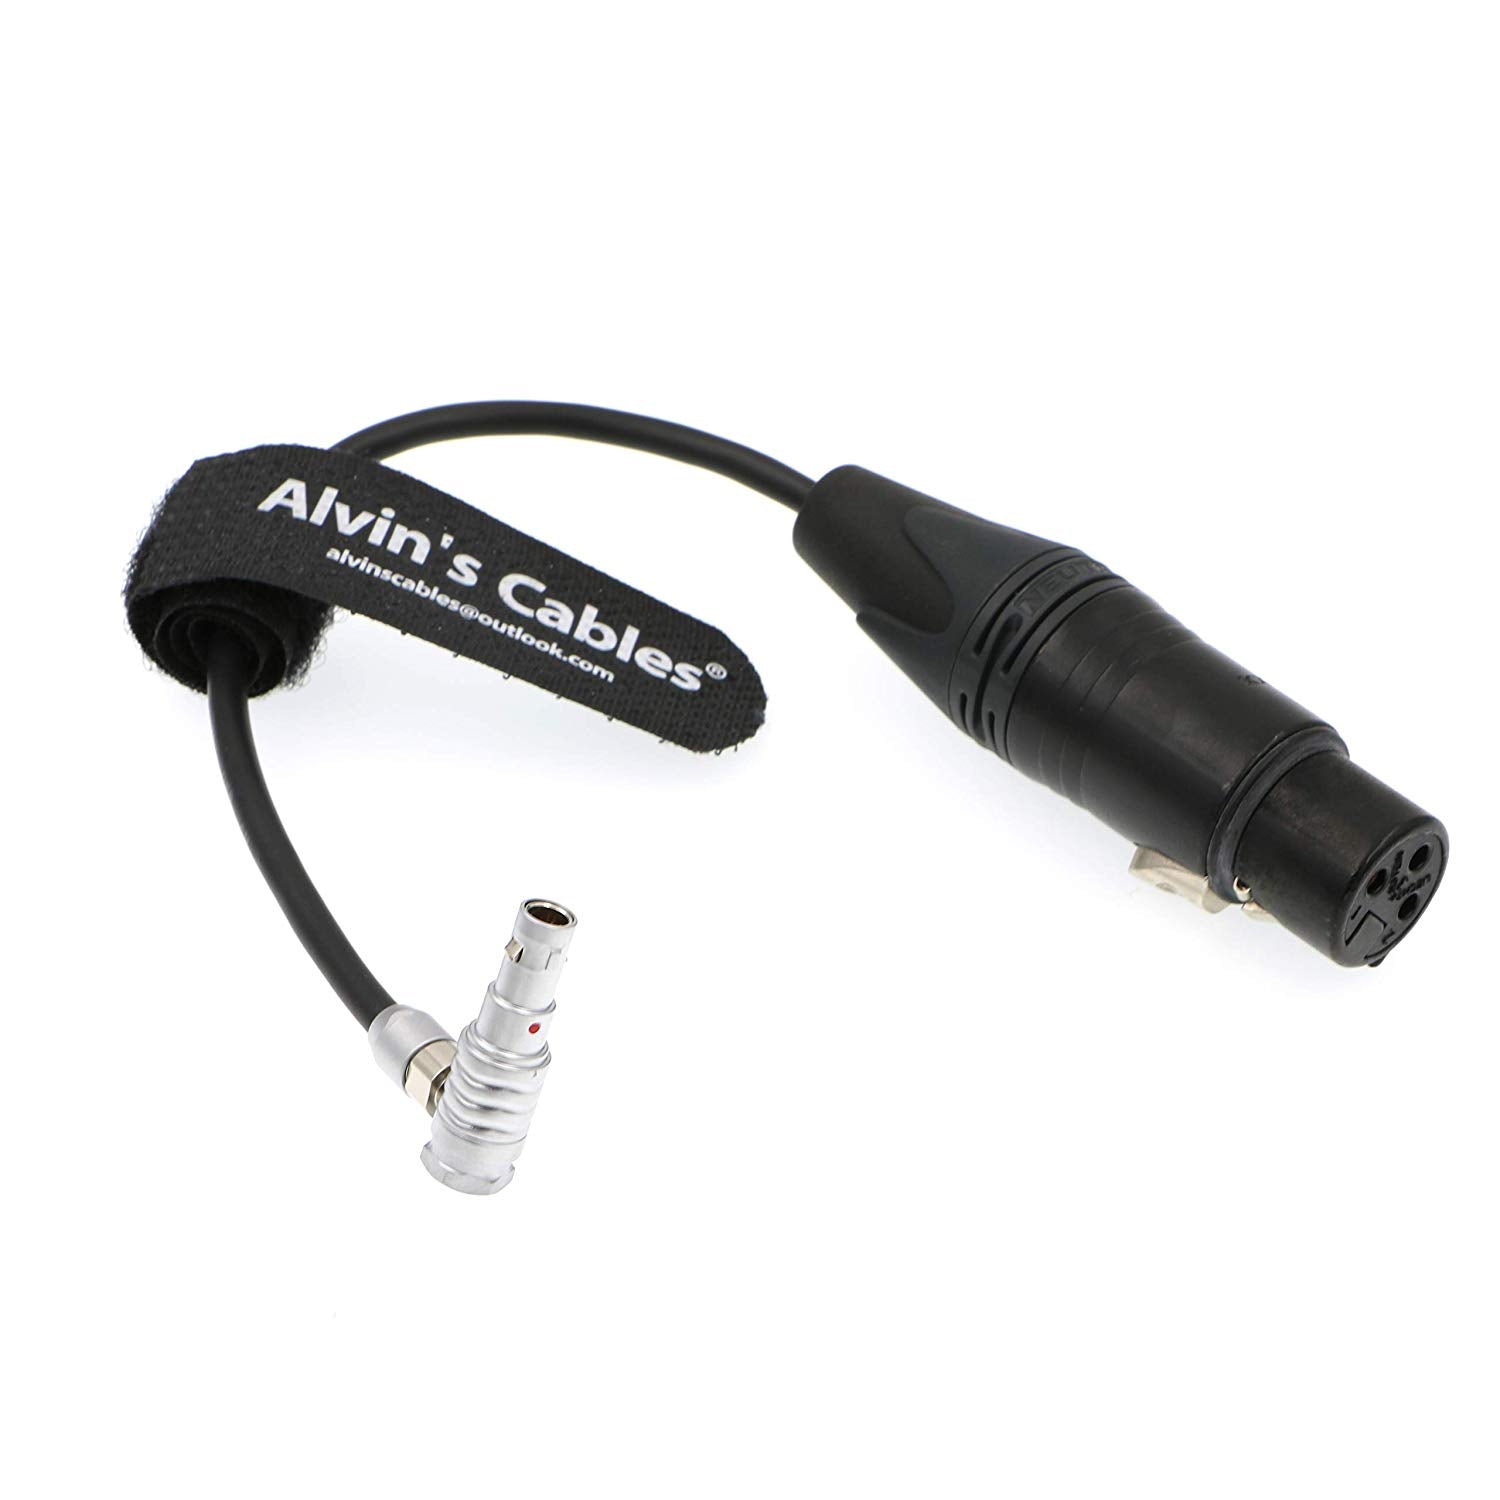 Alvin's Cables 5 Pin 00 Male Right Angle to Original XLR 3 Pin Female Cable for Z CAM E2 Camera